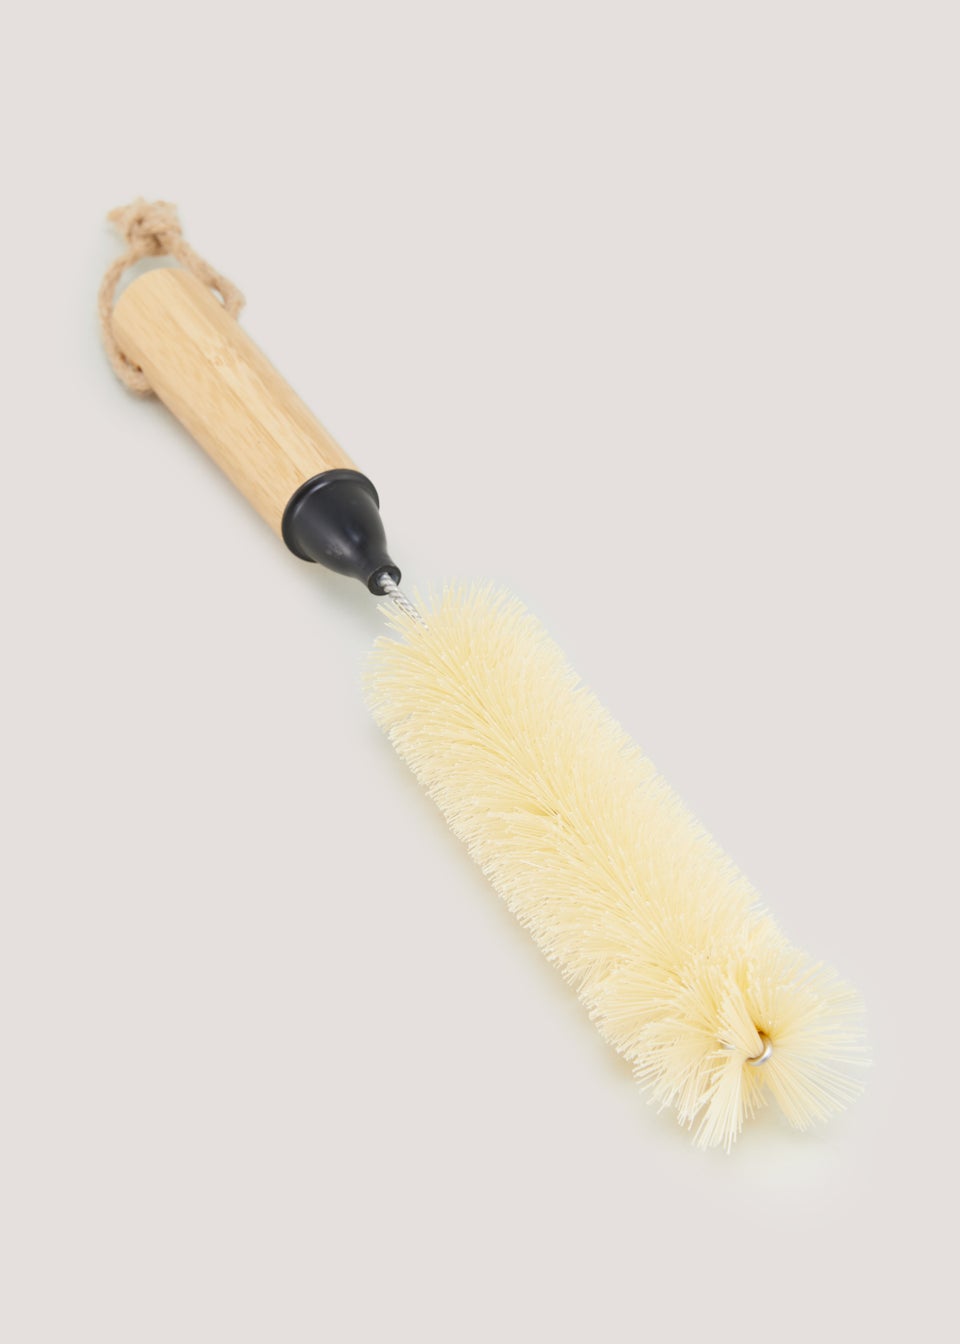 Wooden Bottle Brush (30cm x 2.5cm)